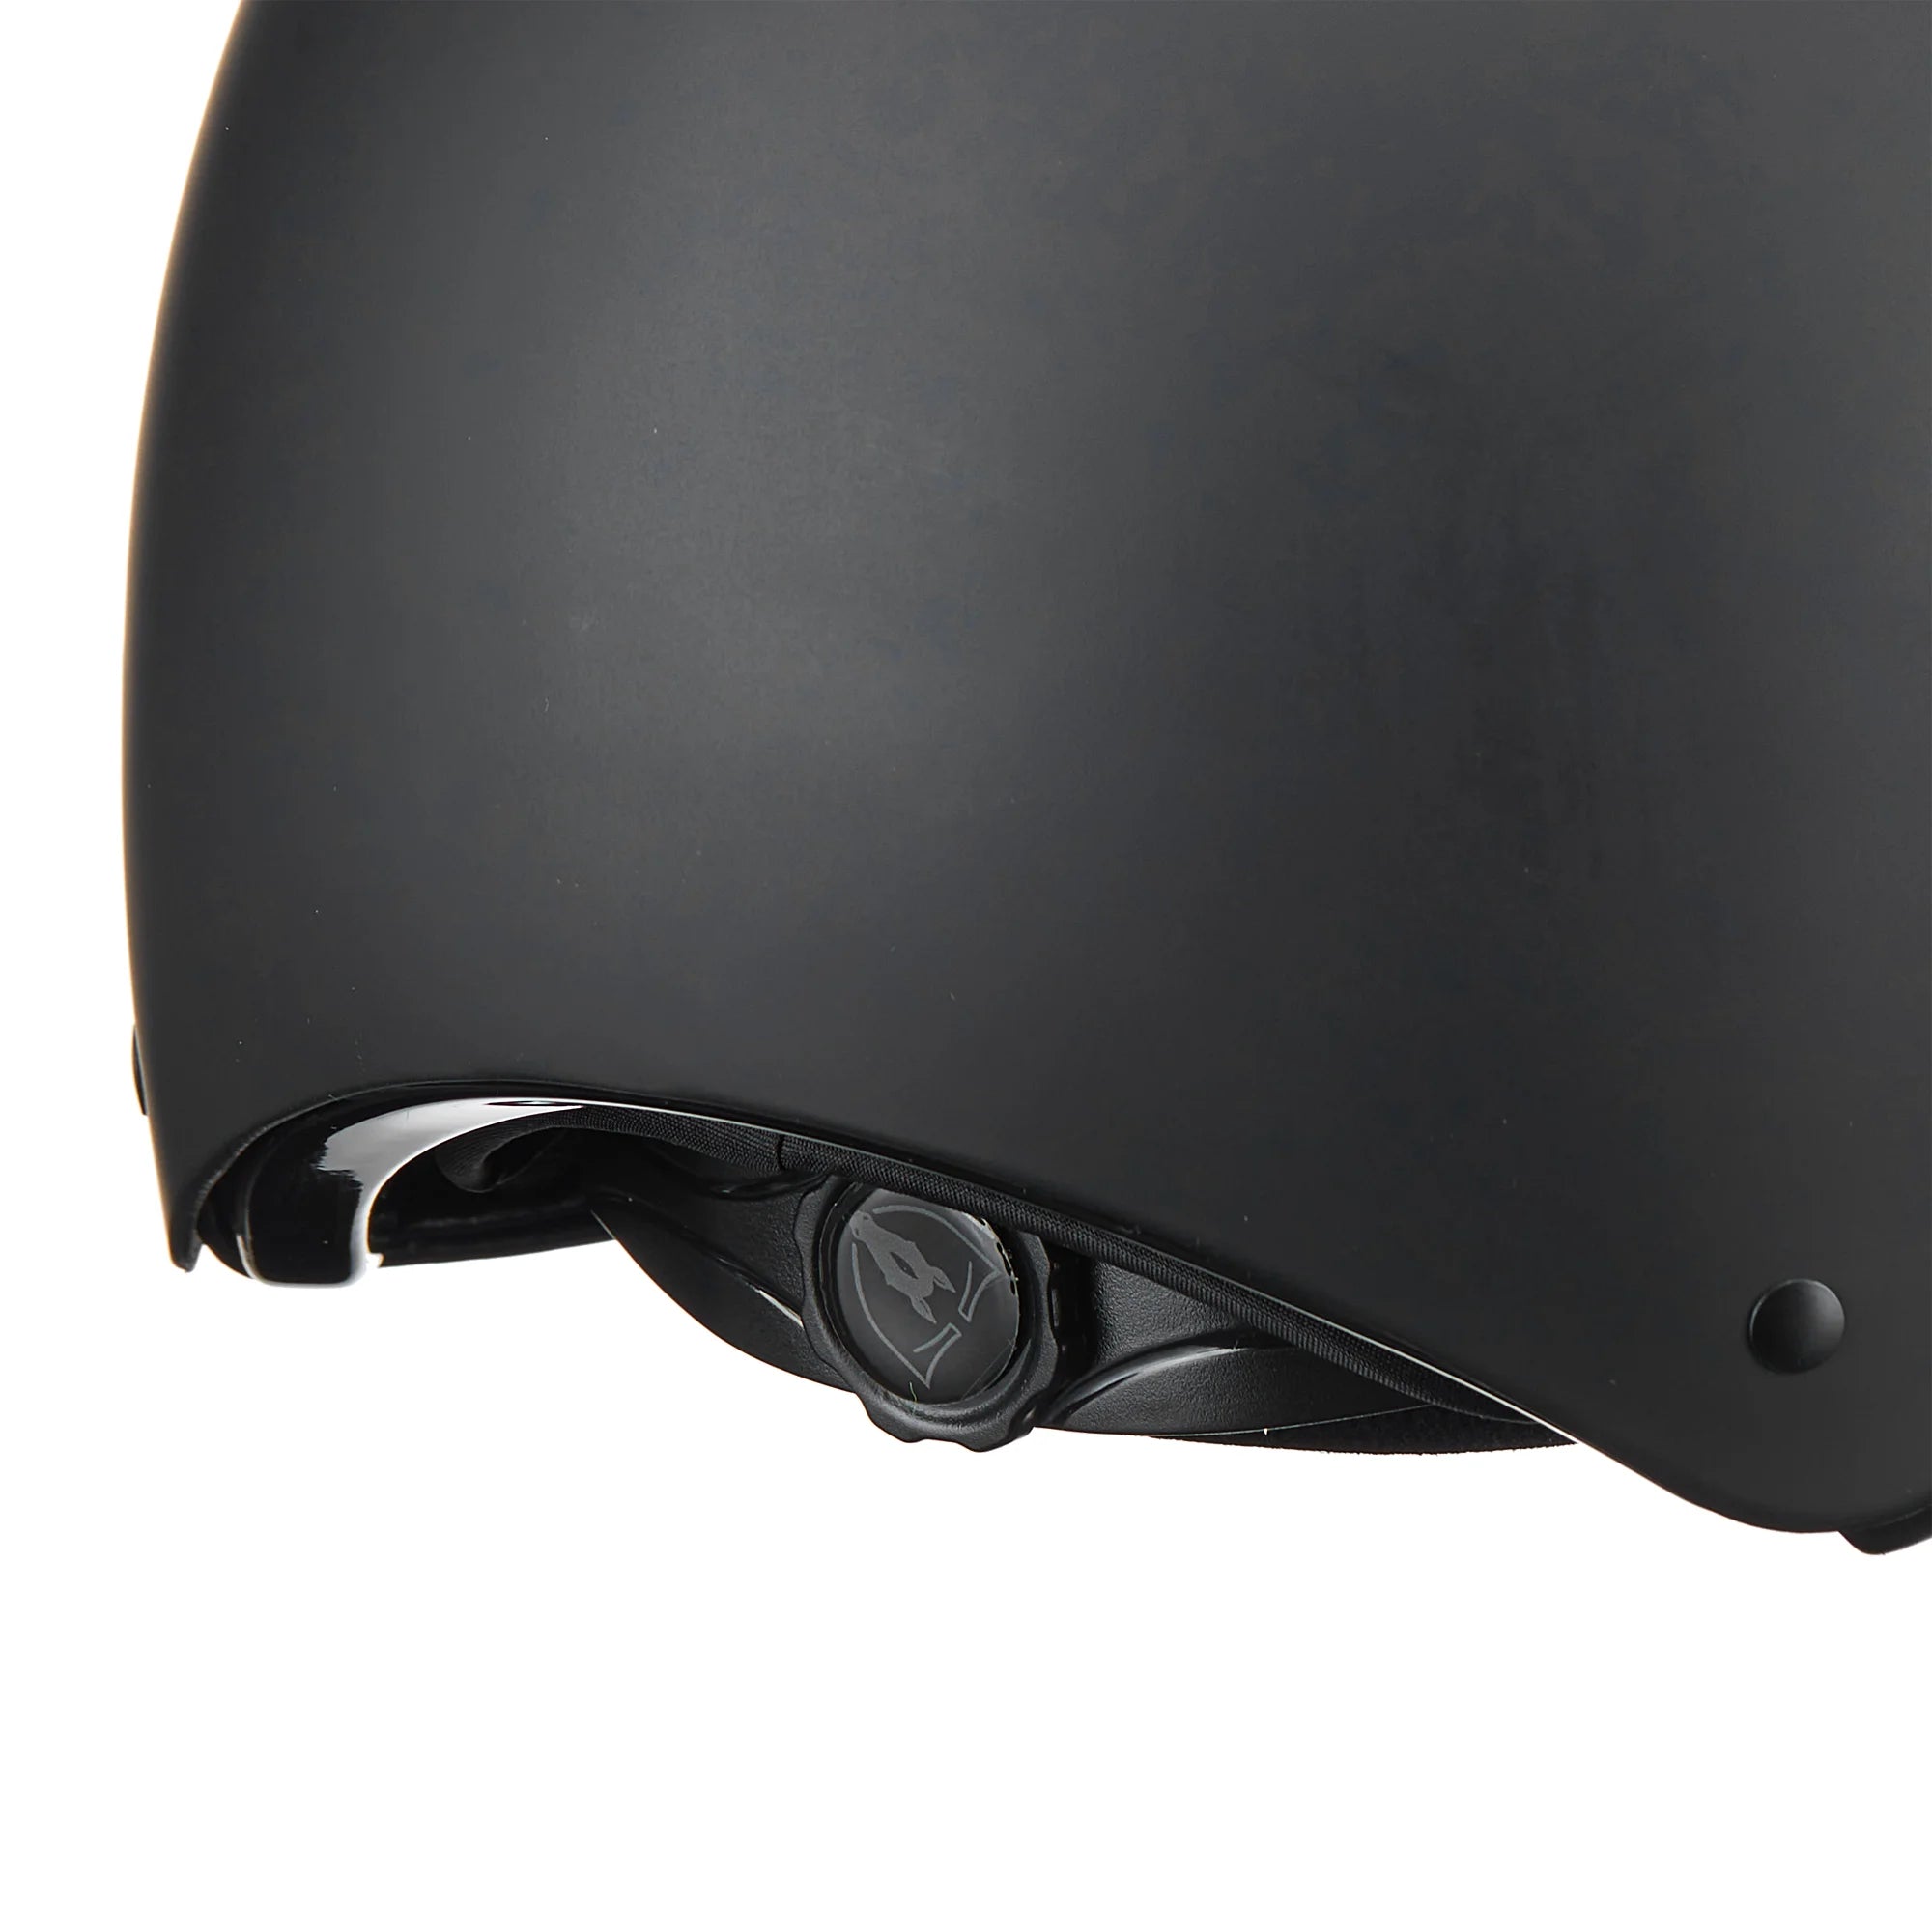 Devon with MIPS® Wide Brim Helmet